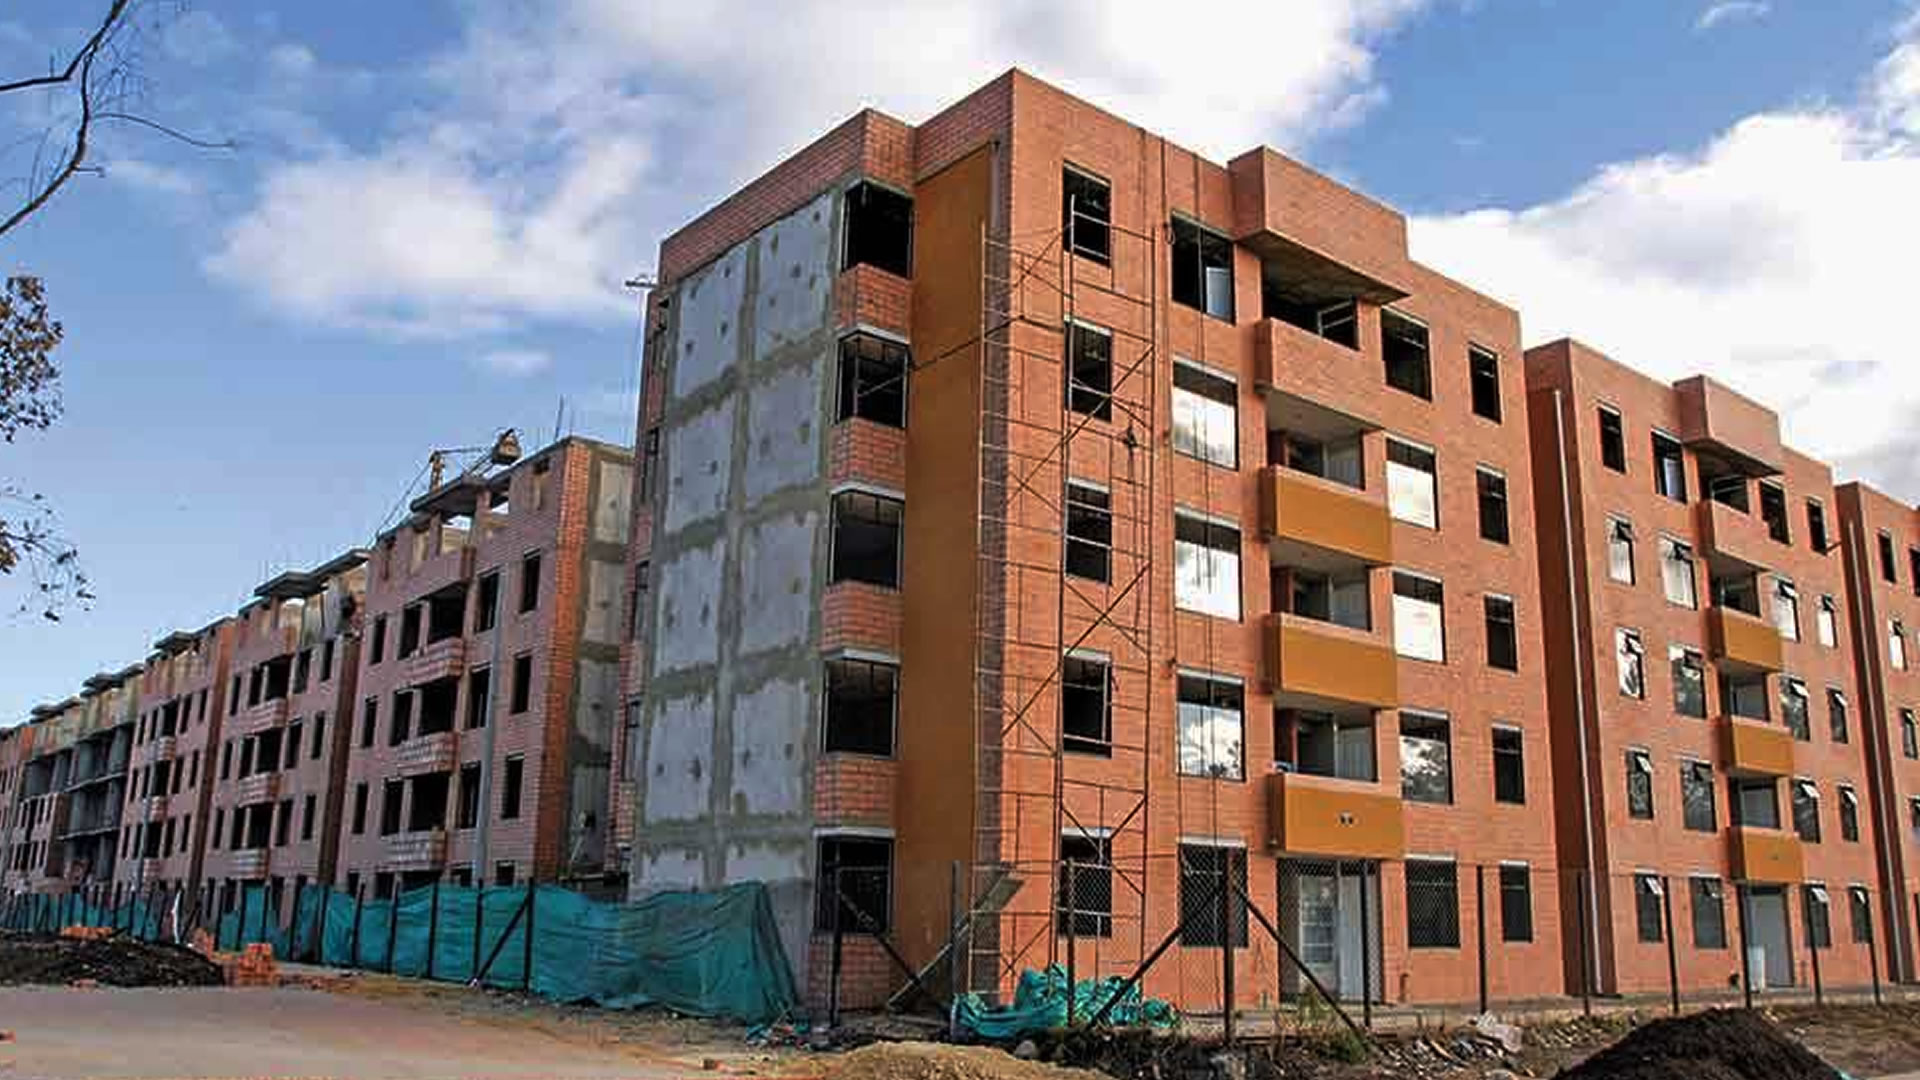 El programa del Gobierno nacional, facilita a los hogares colombianos más vulnerables en la adquisición de una propiedad nueva en zona urbana de cualquier municipio del país, a través de un subsidio familiar de vivienda o de la cobertura de la tasa de interés.